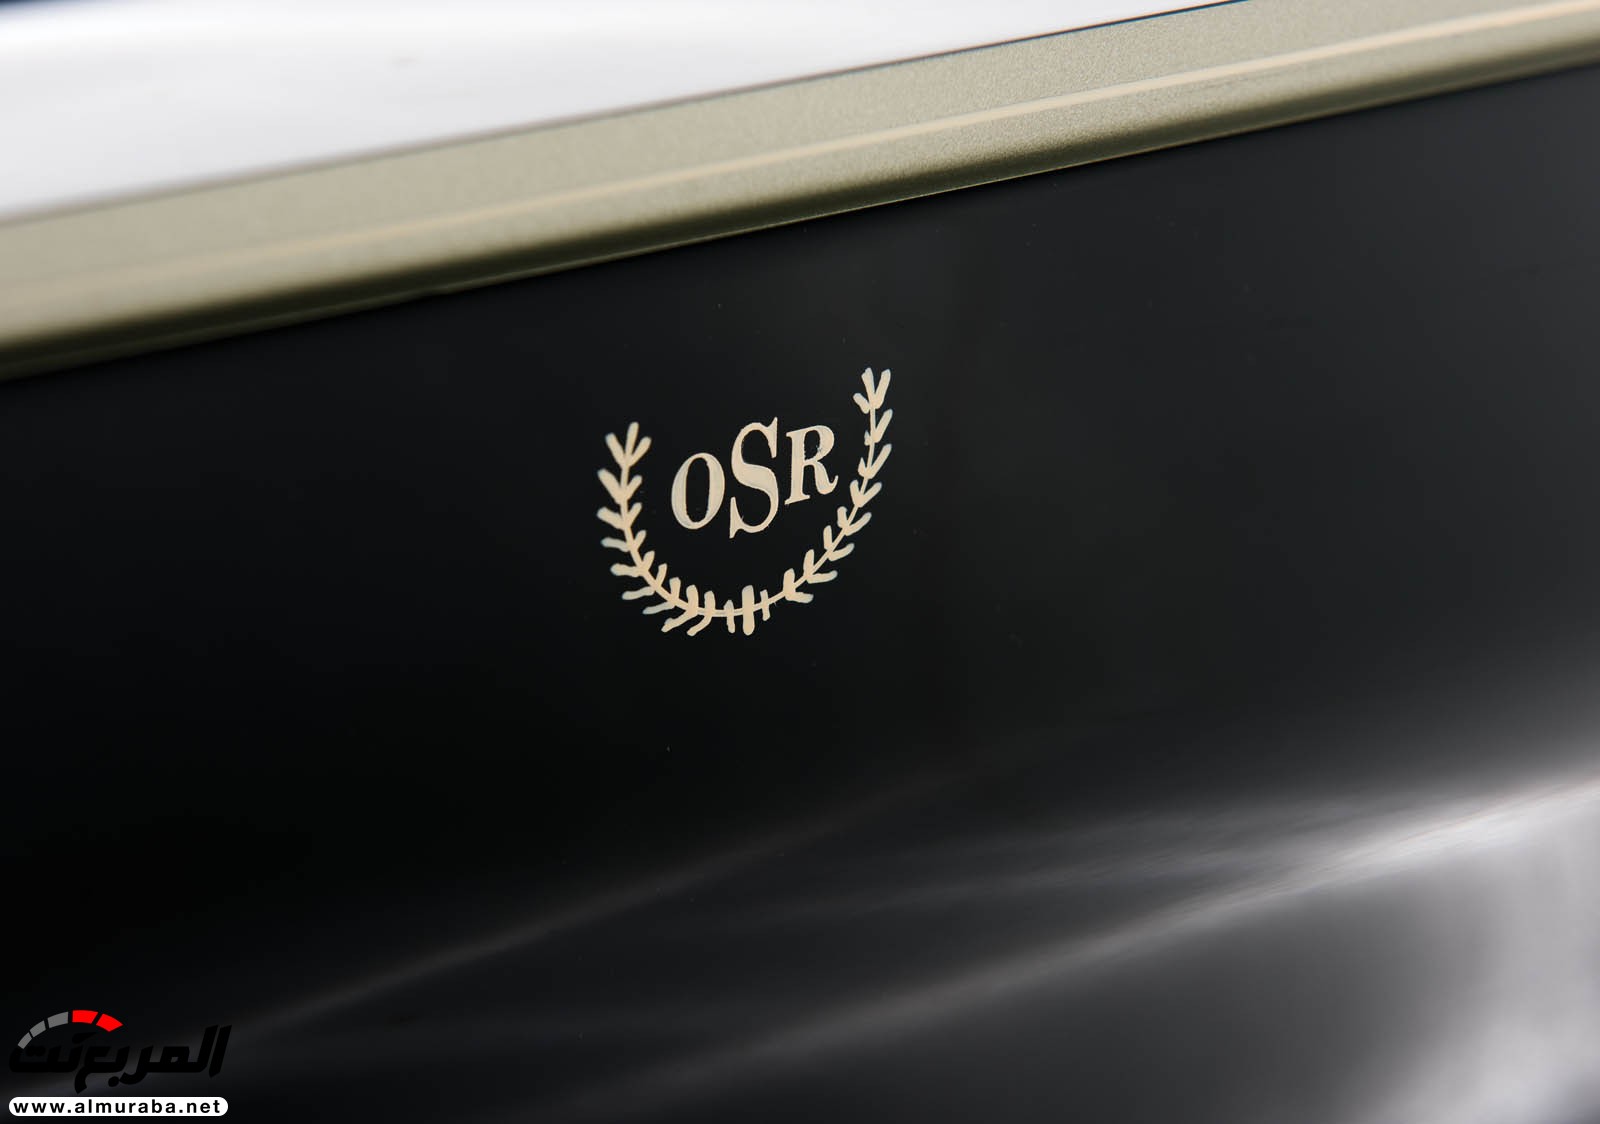 "رولز رويس" سيلفر كلاود 1959 ذات هيكلة الواجن تتوجه لتباع في مزاد عالمي Rolls-Royce Silver Cloud 75